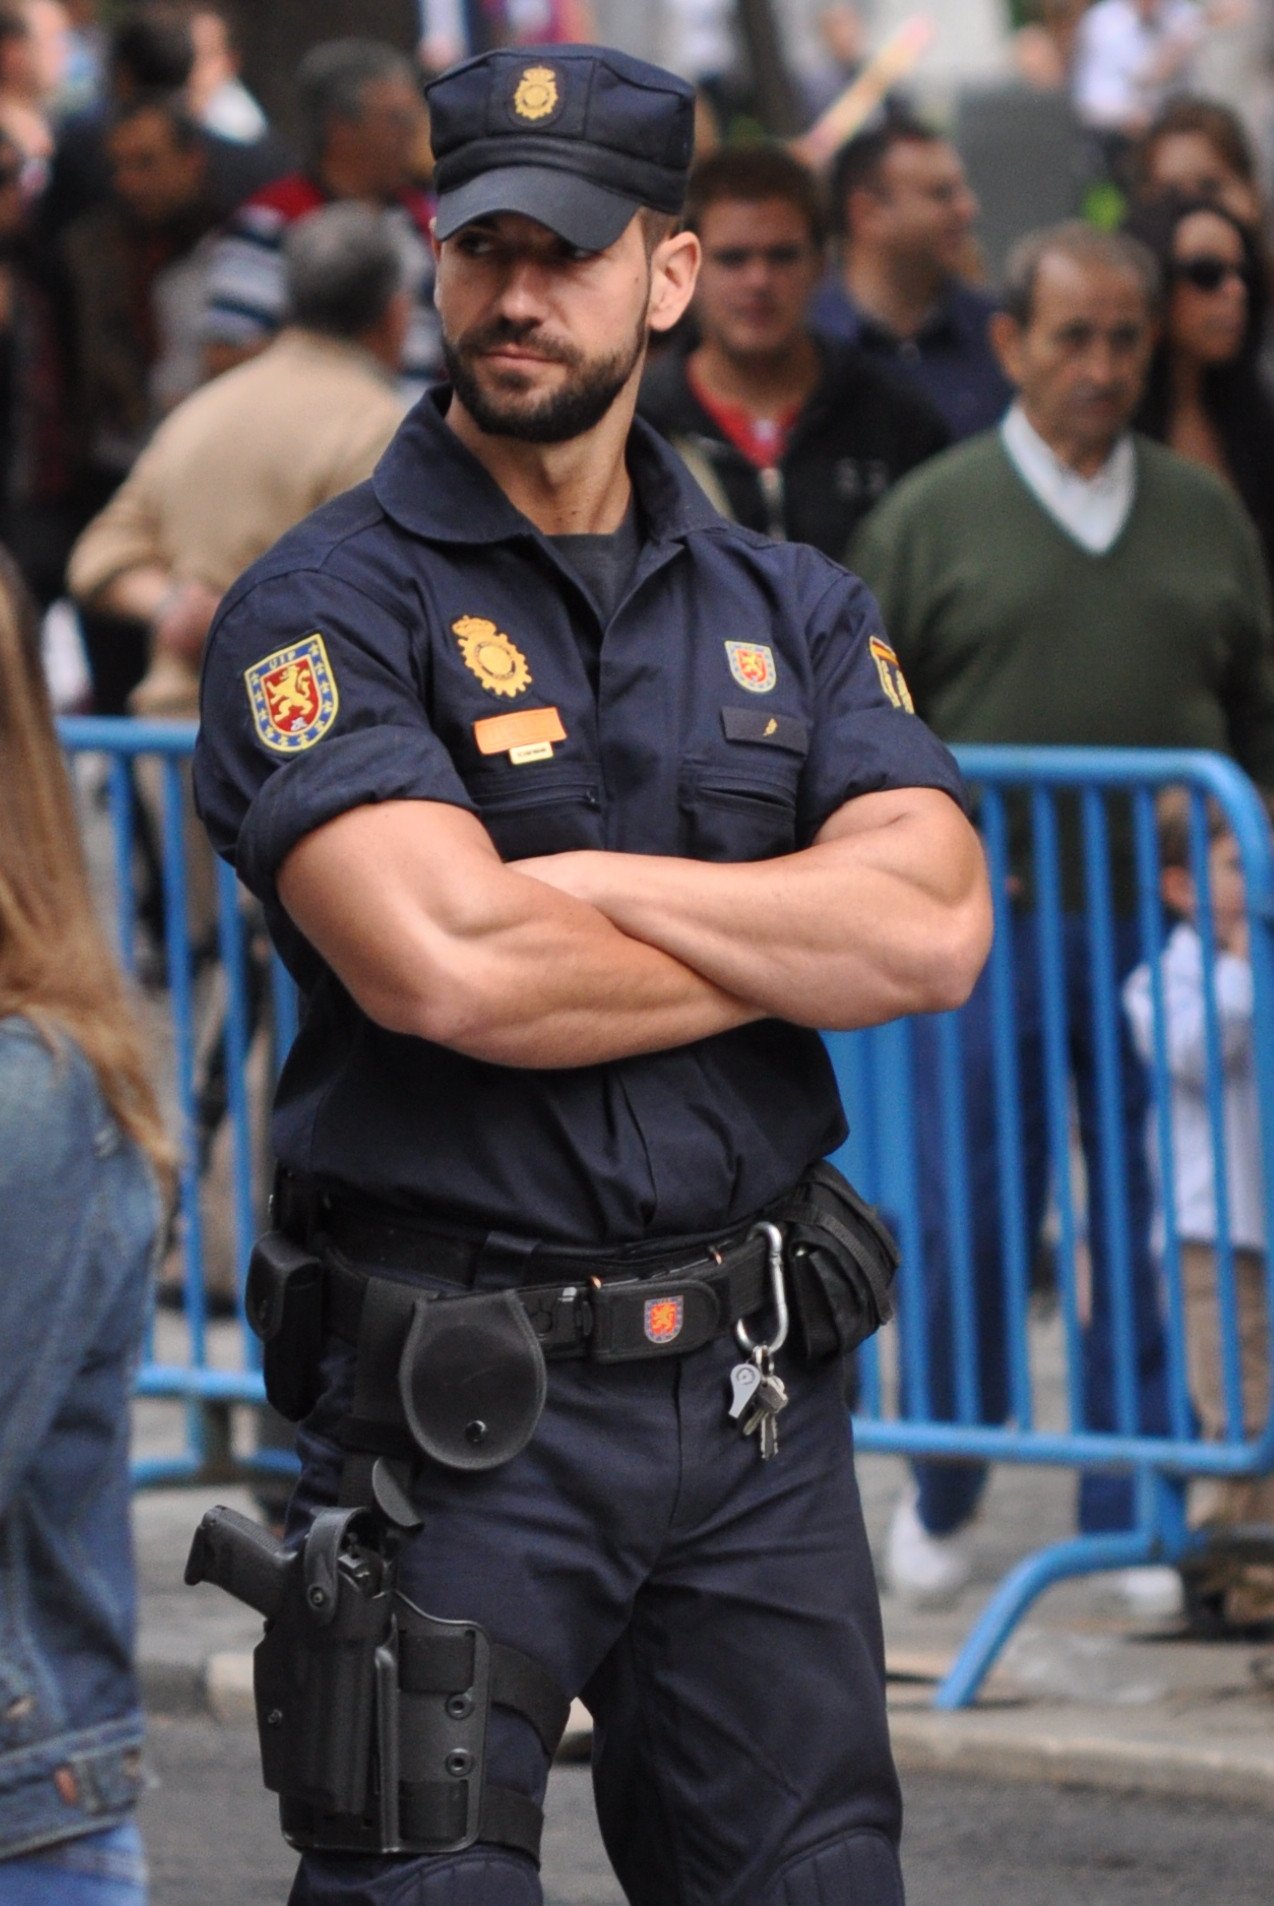 Самого крутого полицейского. Красивый полицейский. Форма испанских полицейских. Американский полицейский. Брутальный полицейский.